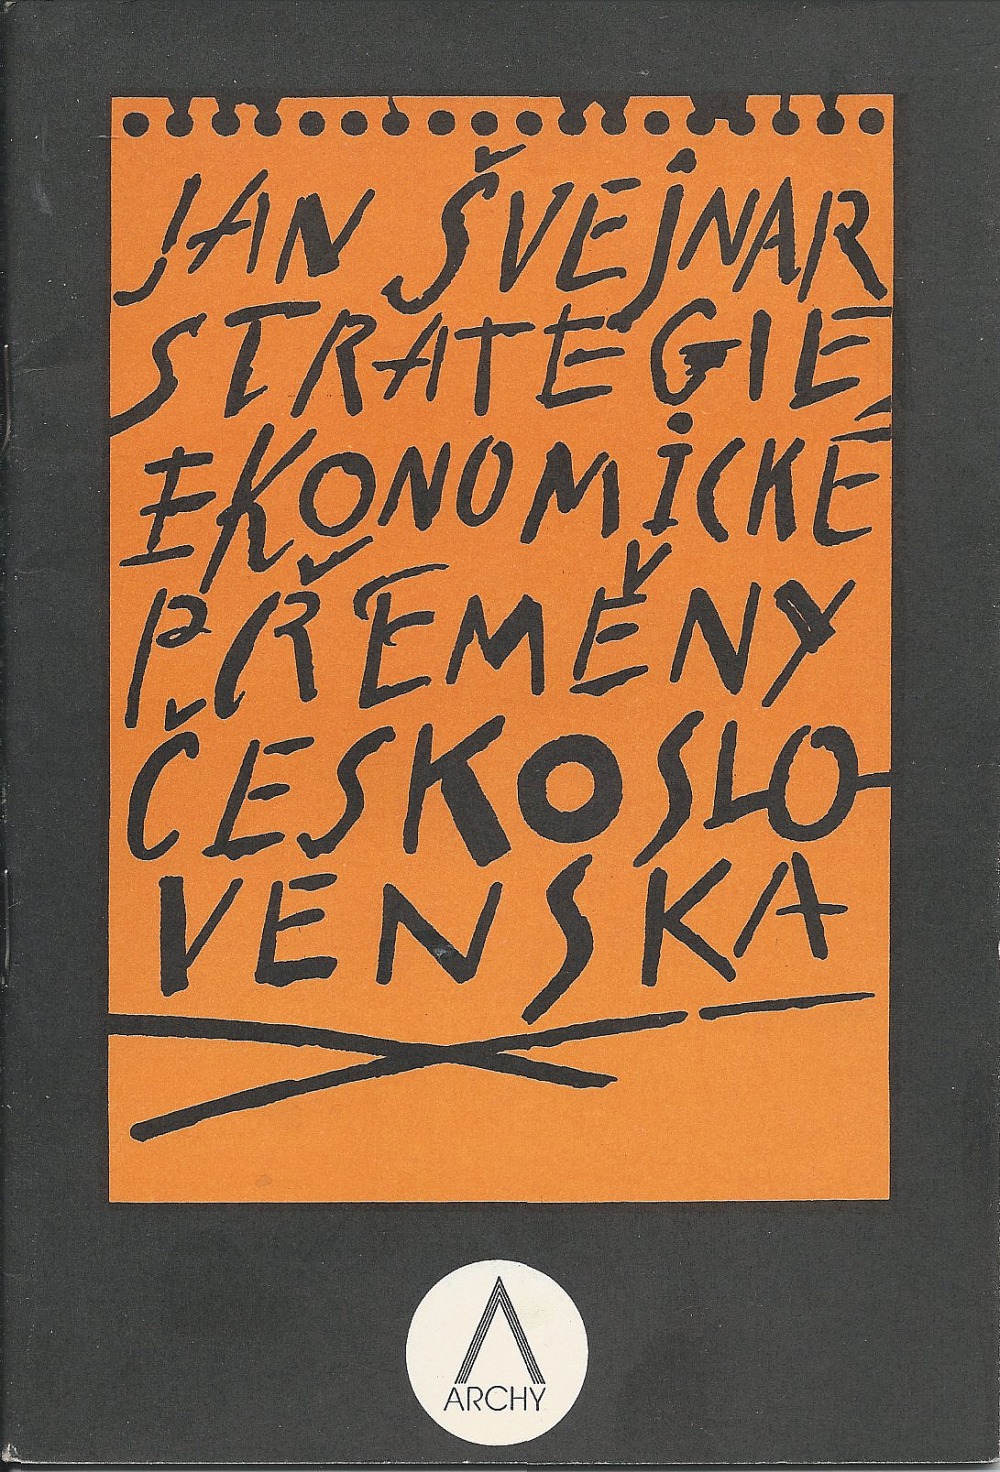 Strategie ekonomické přeměny Československa